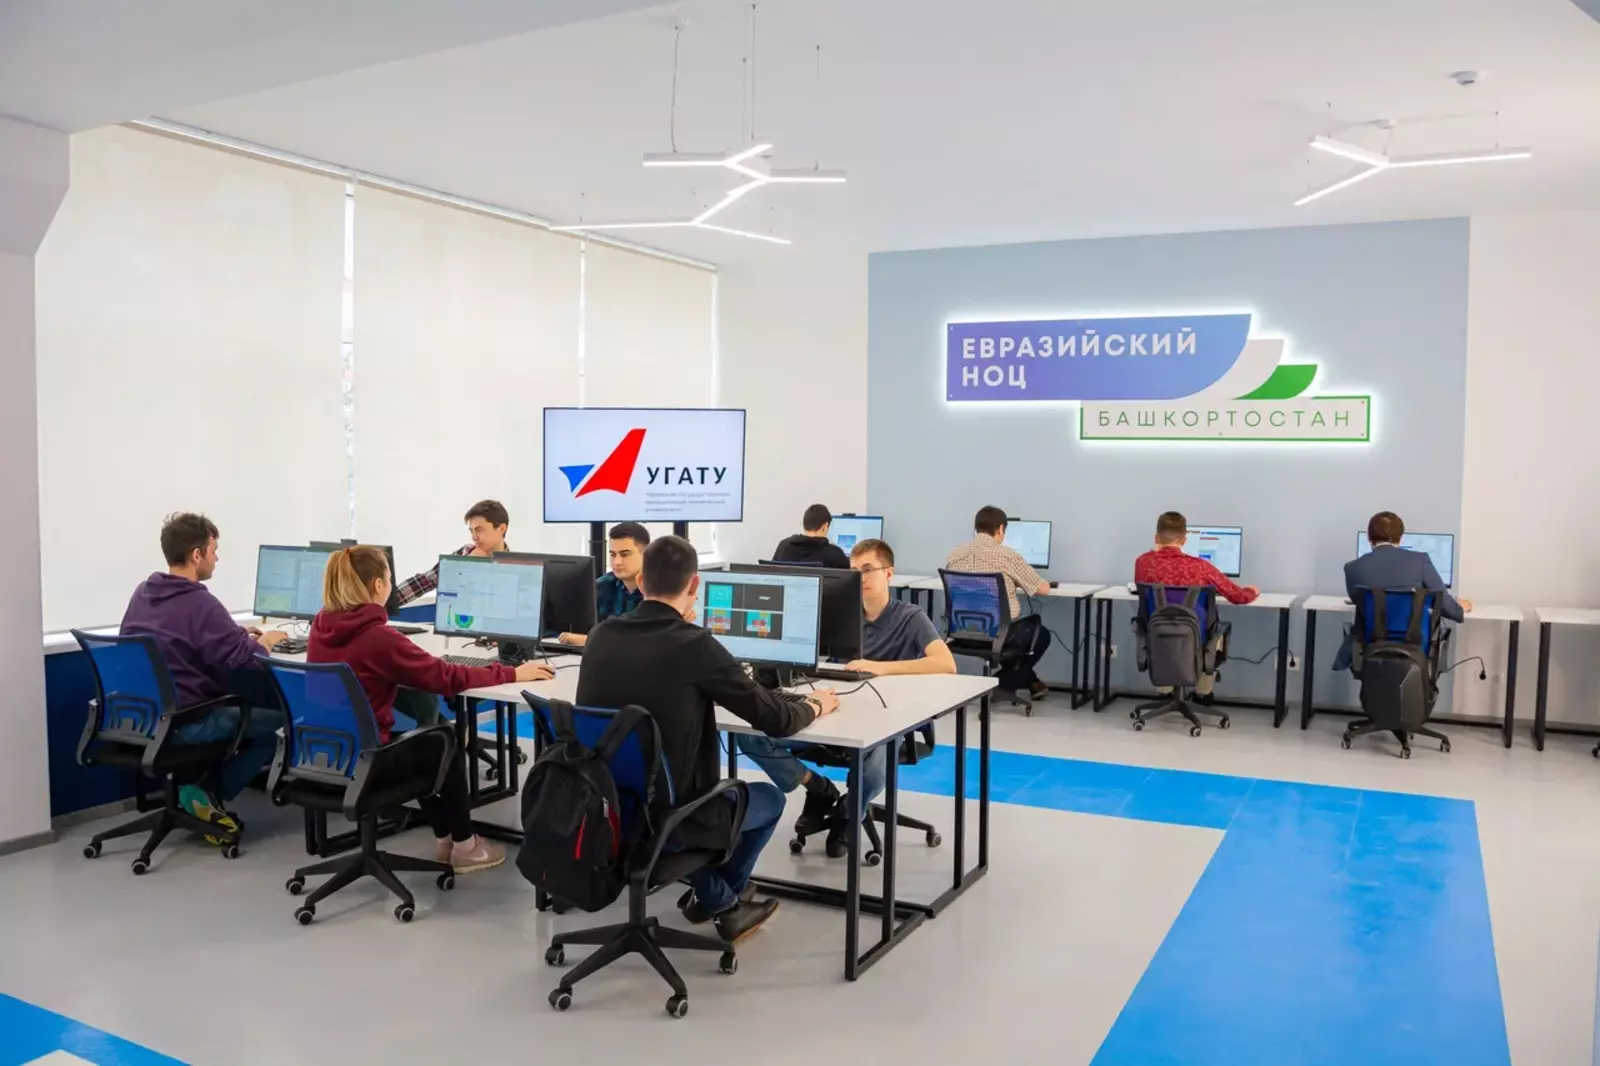 Аудитория Центра развития компетенций Евразийского НОЦ открылась в авиационном университете